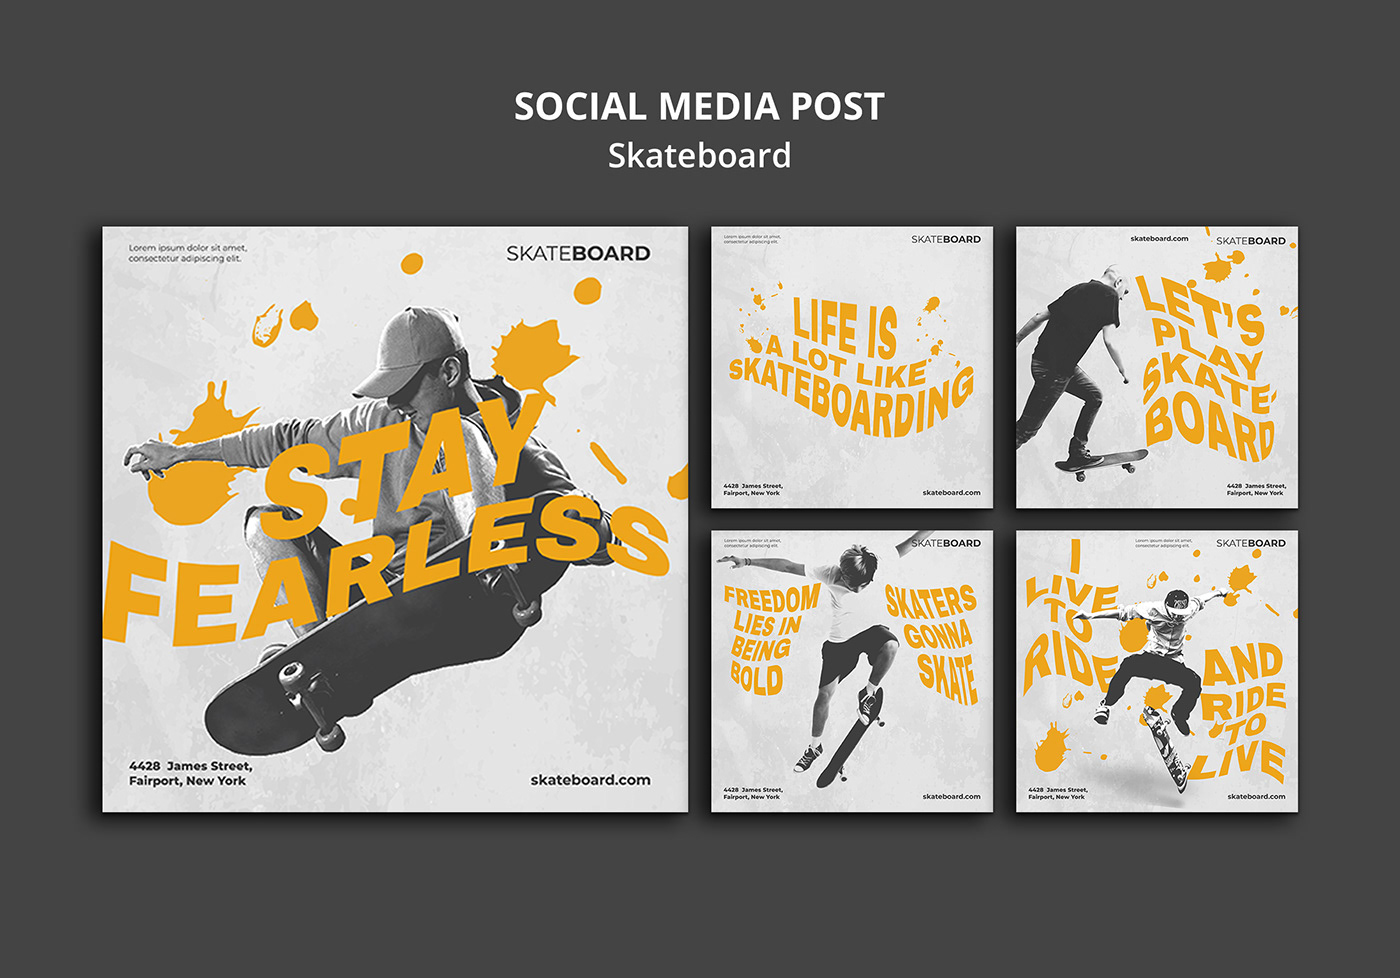 adobe illustrator download free psd freebies Longboards skateboard branding SKATEBOARD DESIGN skateboarding design Skateboarding Magazine skateboards